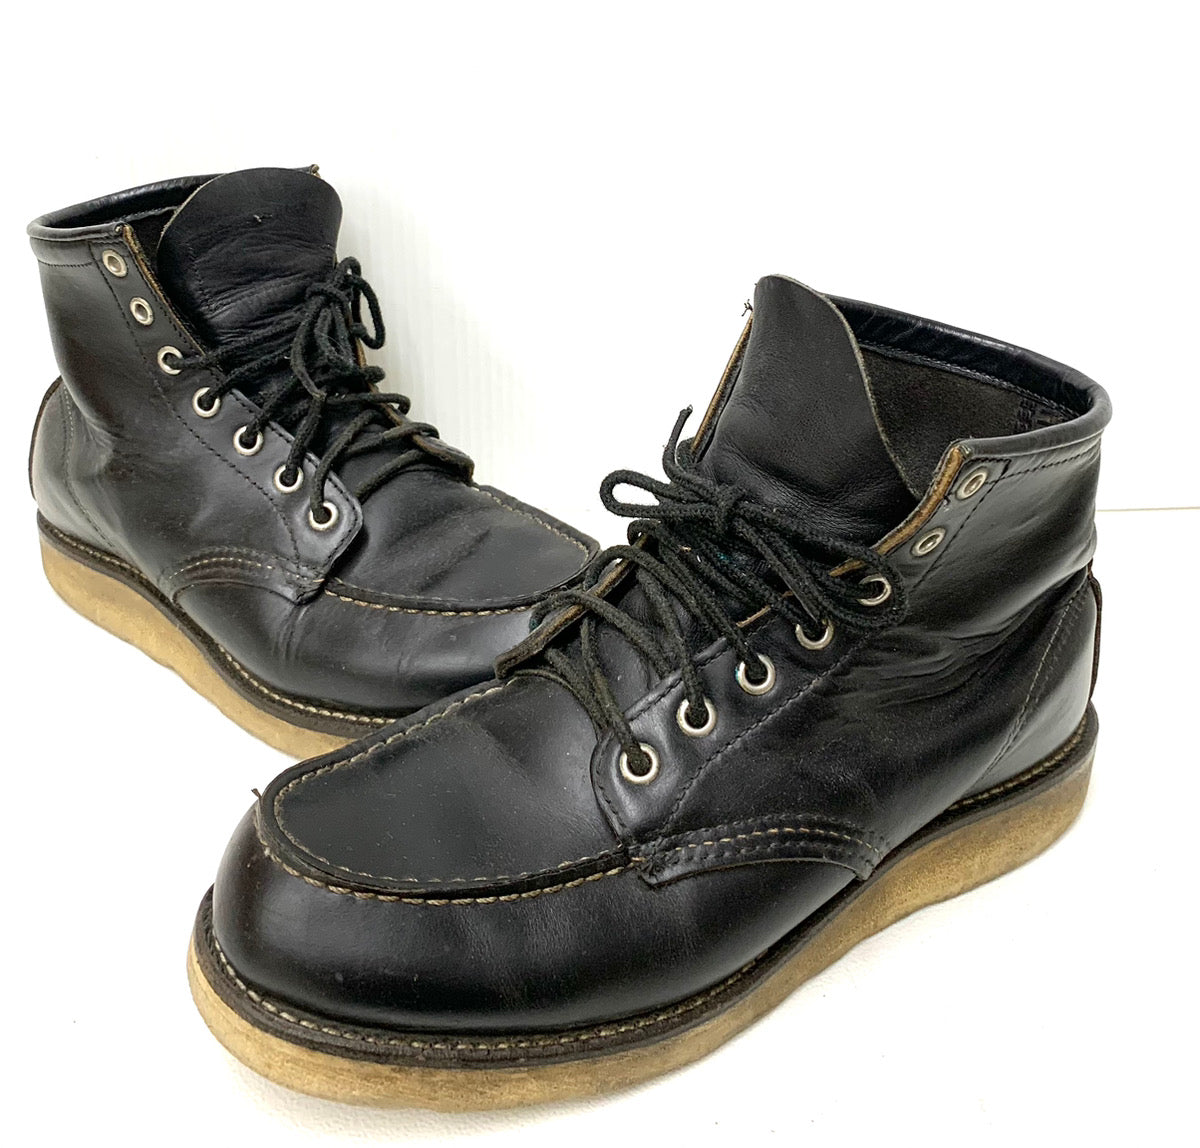 レッドウィング RED WING アイリッシュセッター IRISH SETTER 8179 犬タグ メンズ靴 ブーツ ワーク ロゴ ブラック  201-shoes621-